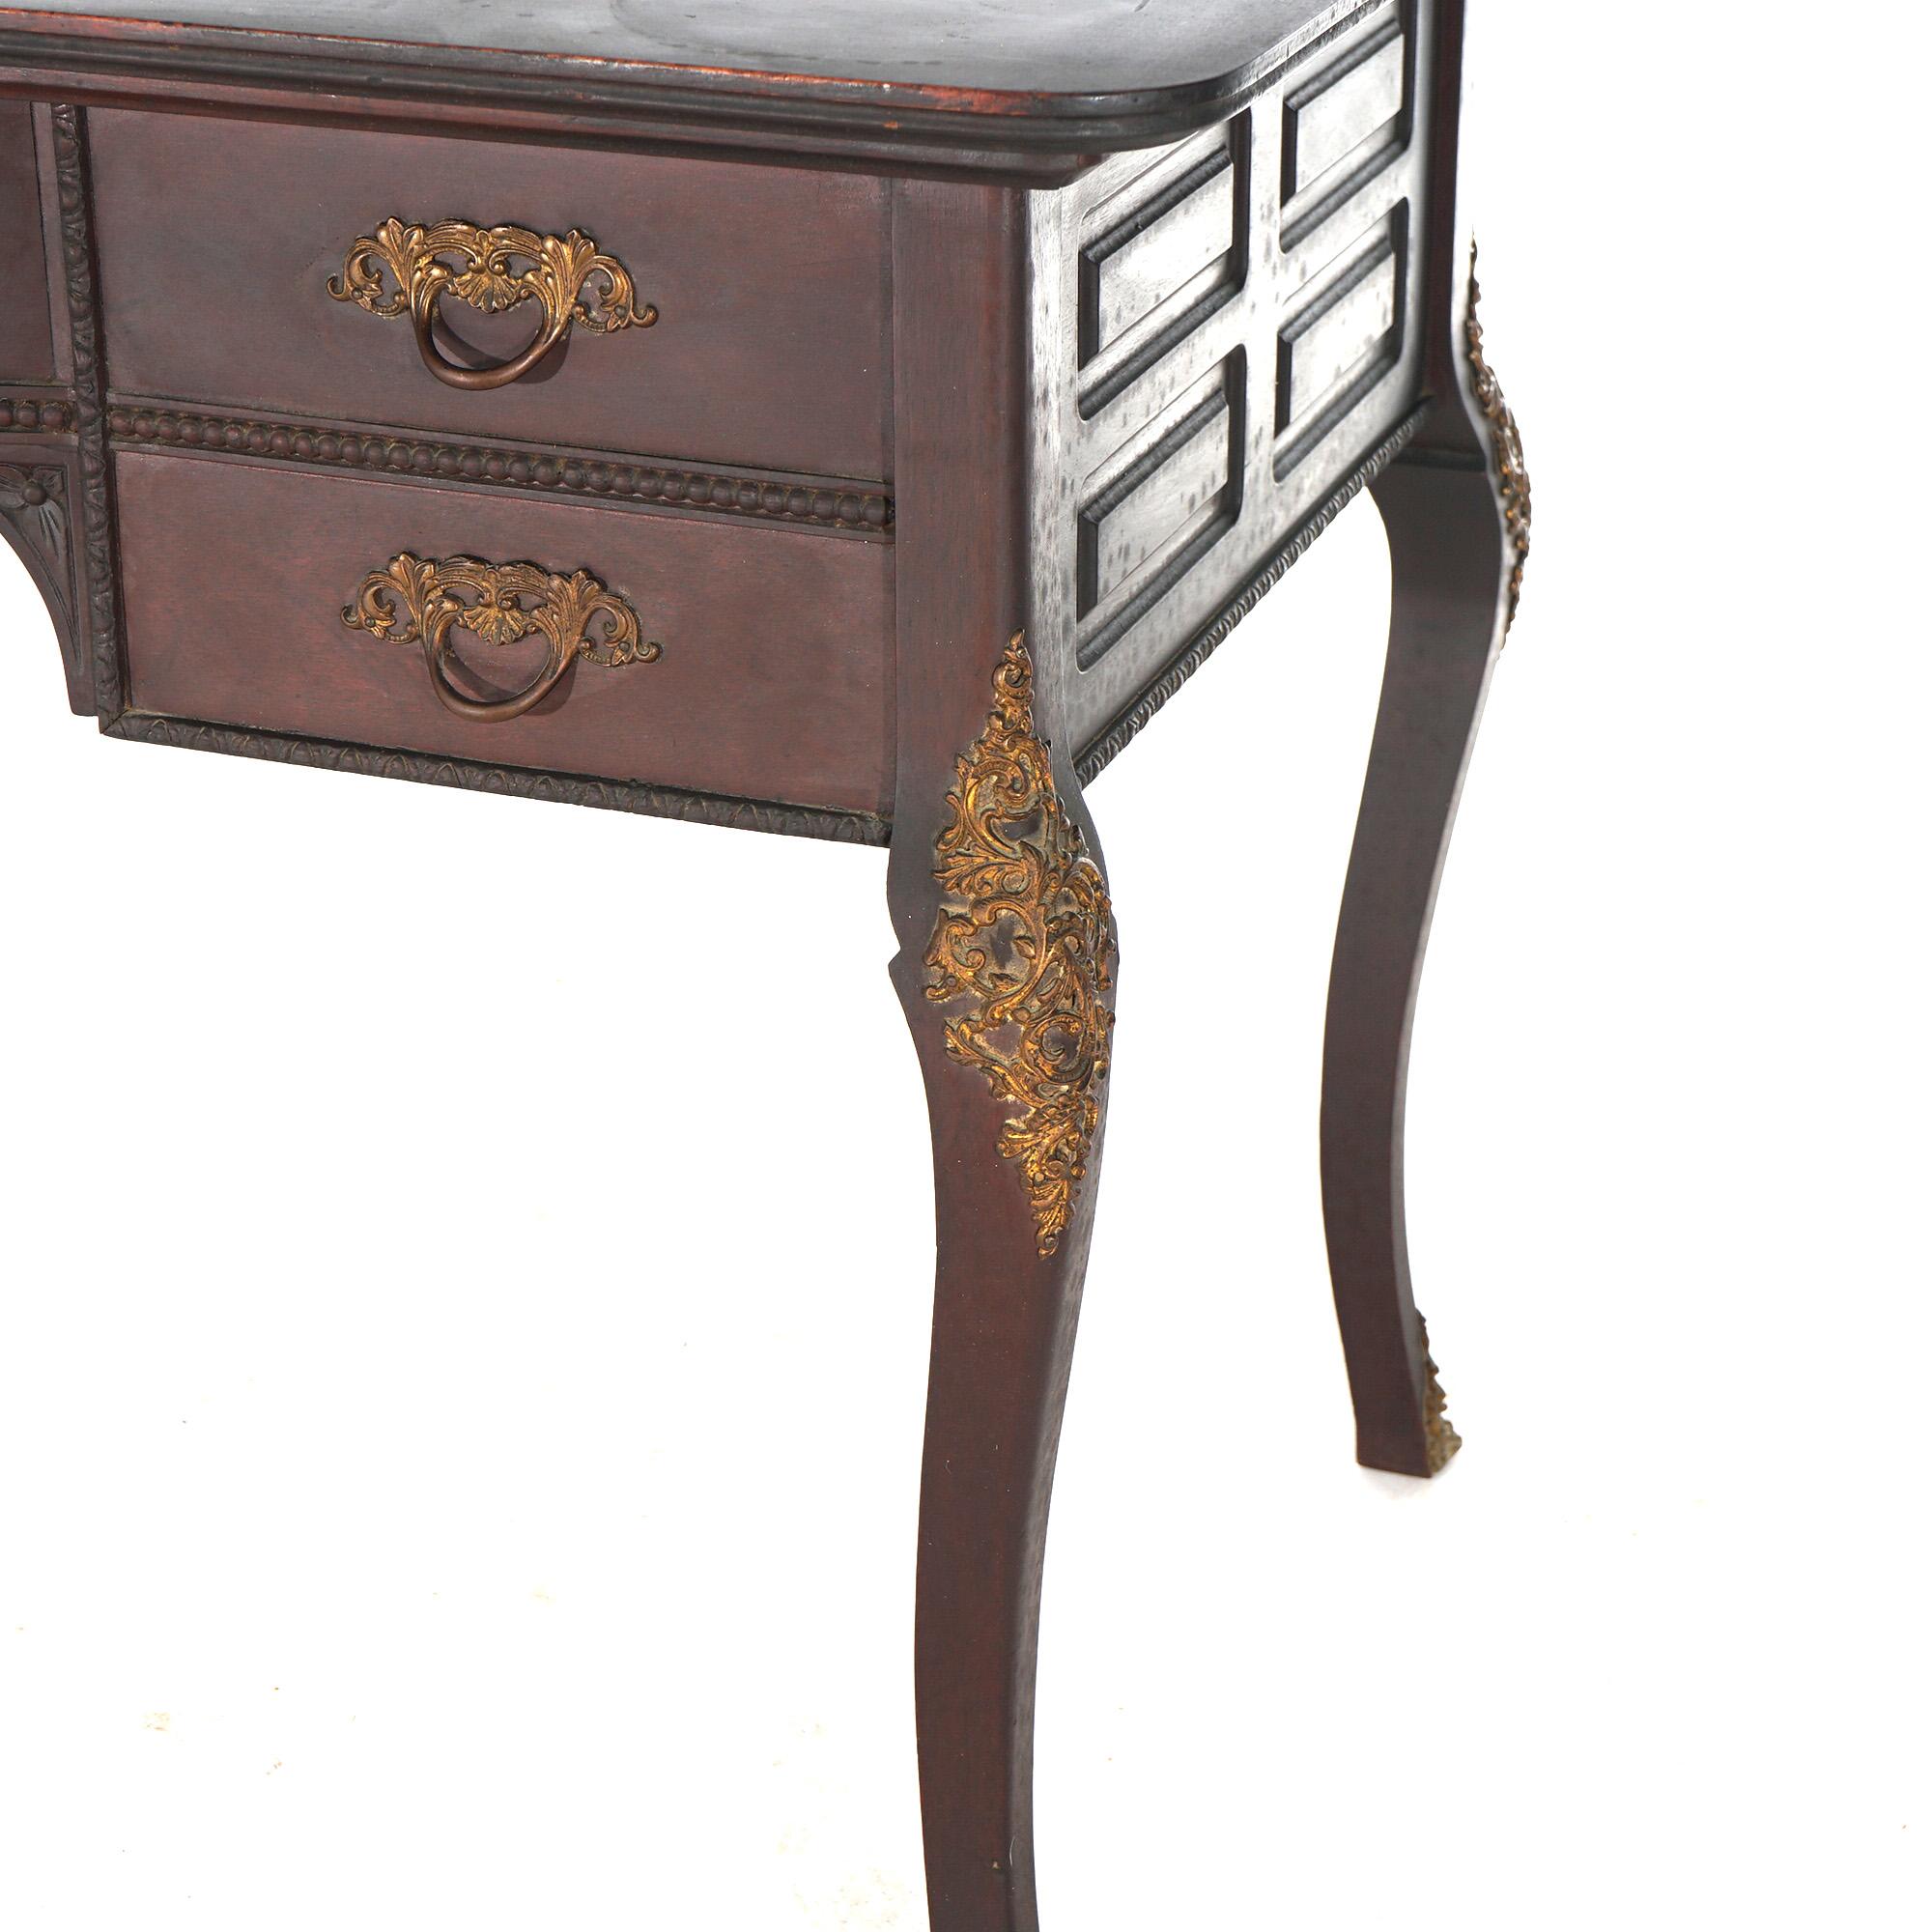 Ancien bureau français en acajou avec une structure en forme, une caisse en bois avec des tiroirs, des montures en bronze doré et des pieds en cabriole, vers 1910.

Dimensions - 29,5 